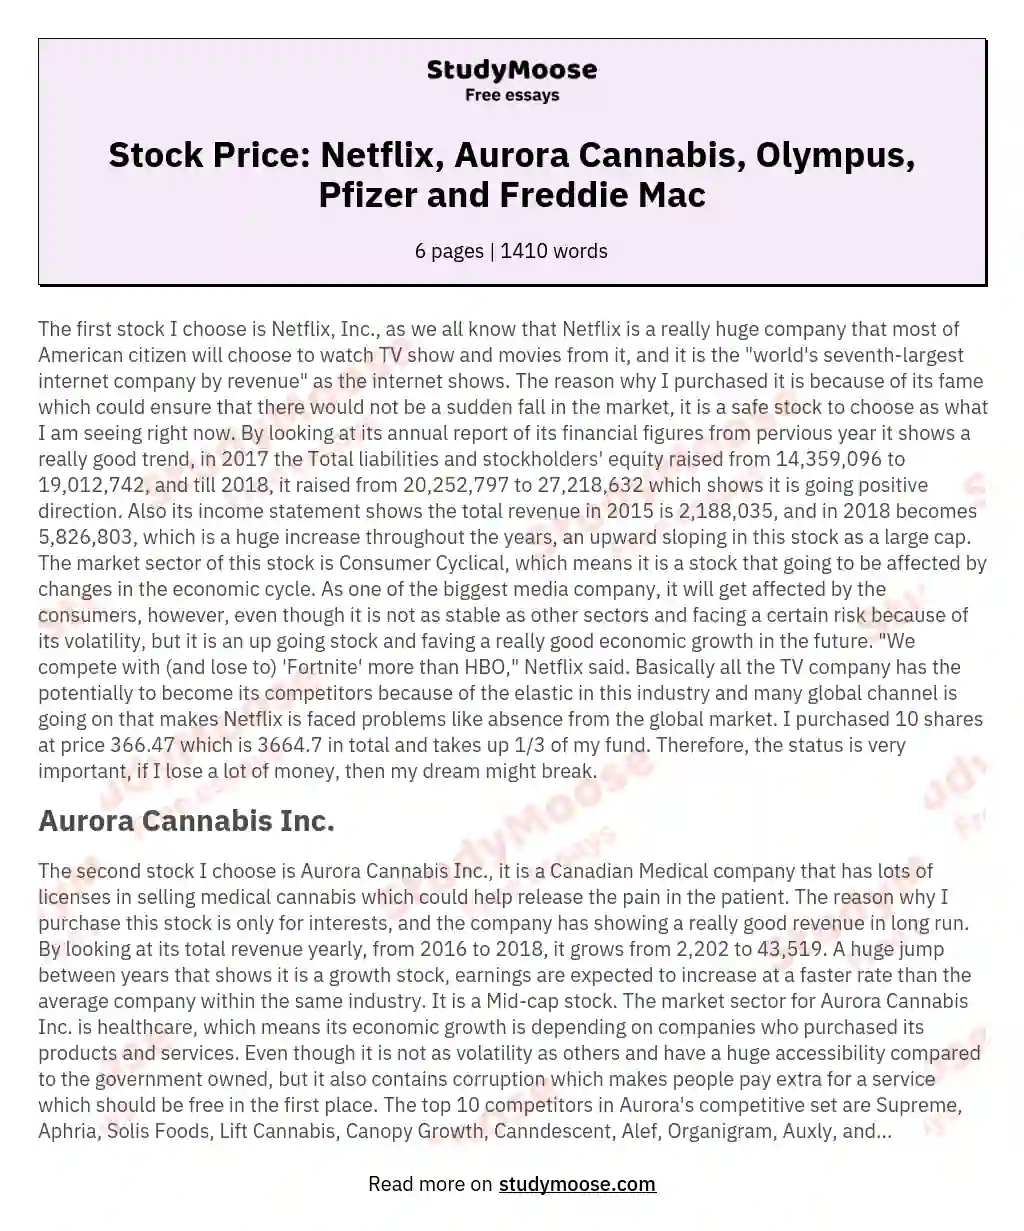 Stock Price: Netflix, Aurora Cannabis, Olympus, Pfizer and Freddie Mac essay